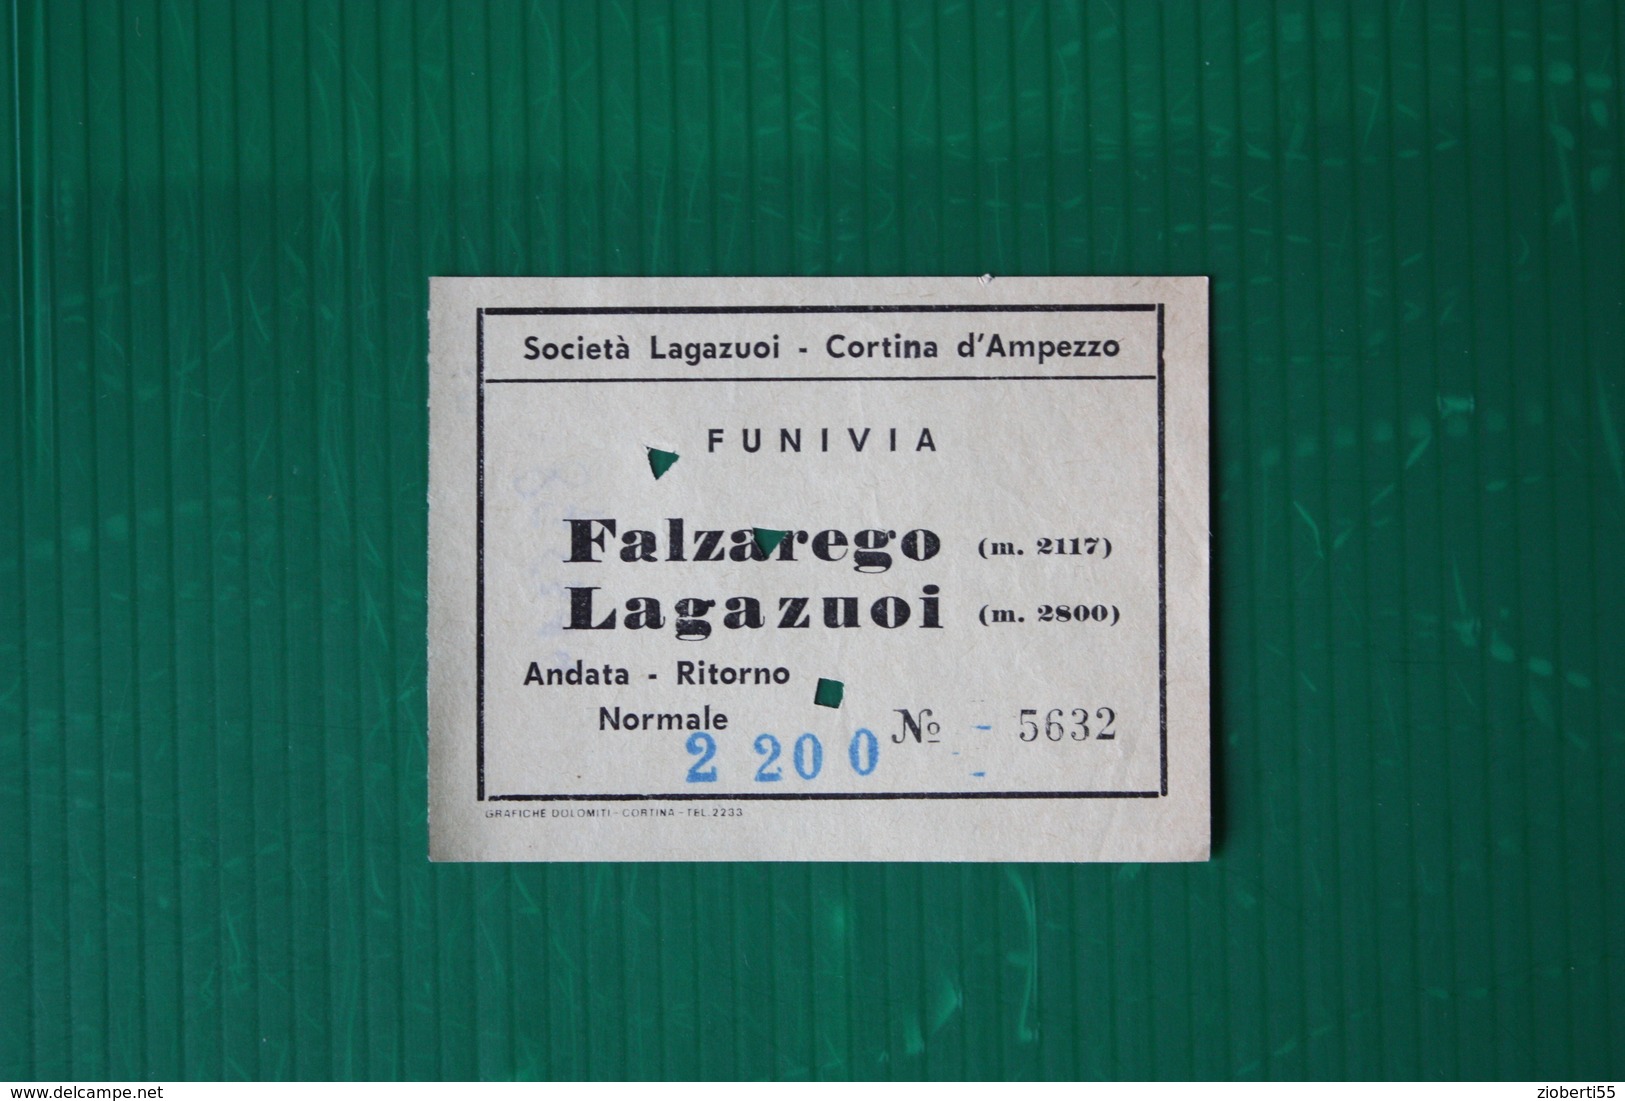 CORTINA D'AMPEZZO - FUNIVIA FALZAREGO-LAGAZUOI - 1969 - Wintersport